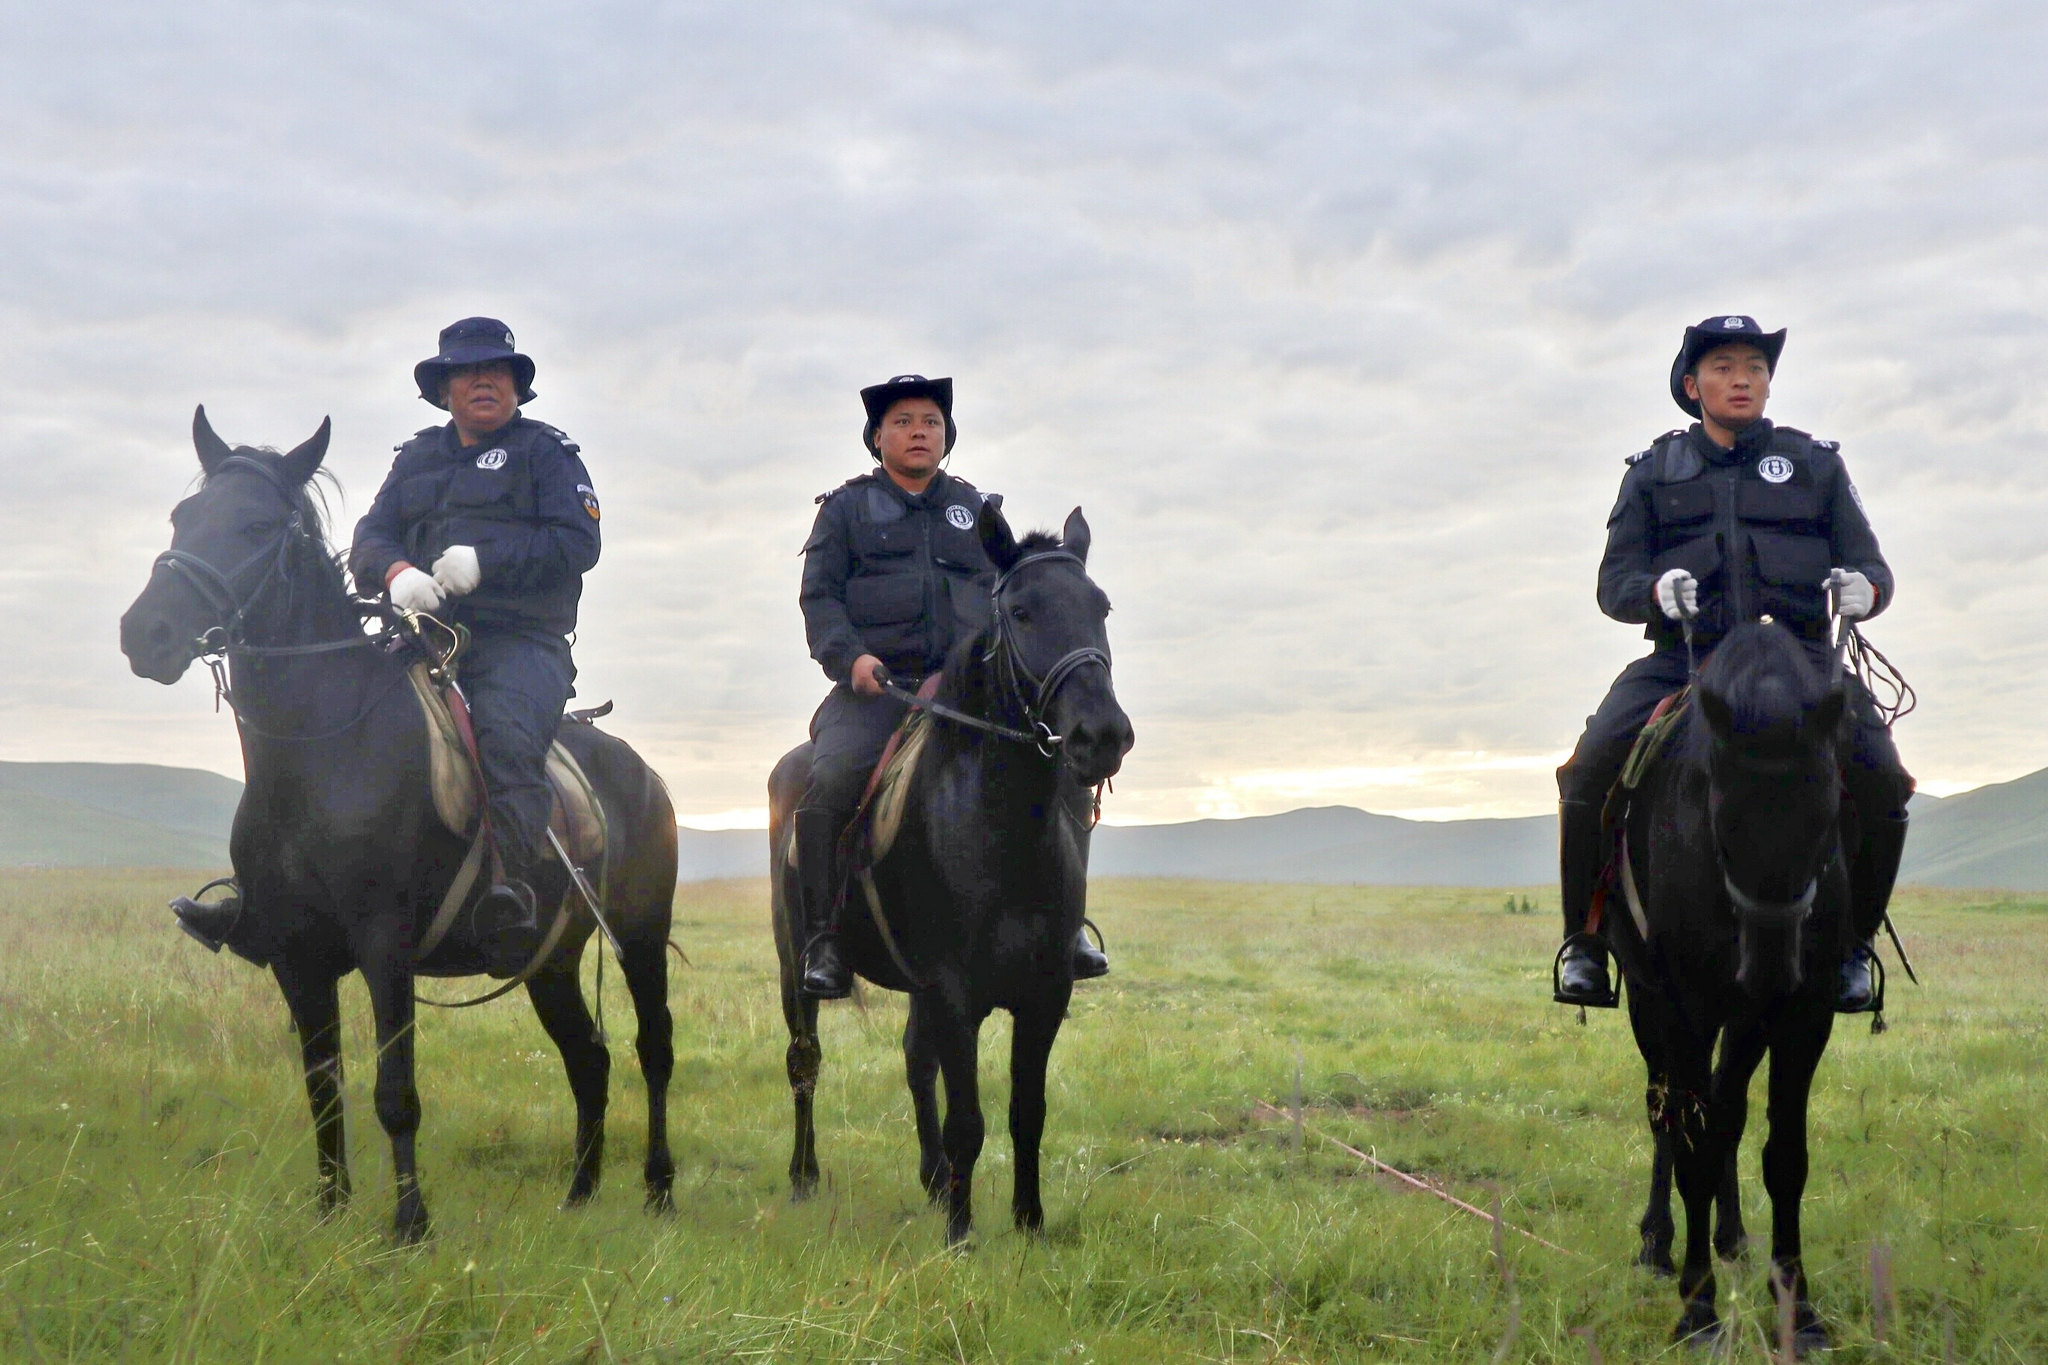 马背上的骑警队:为草原牧民守平安